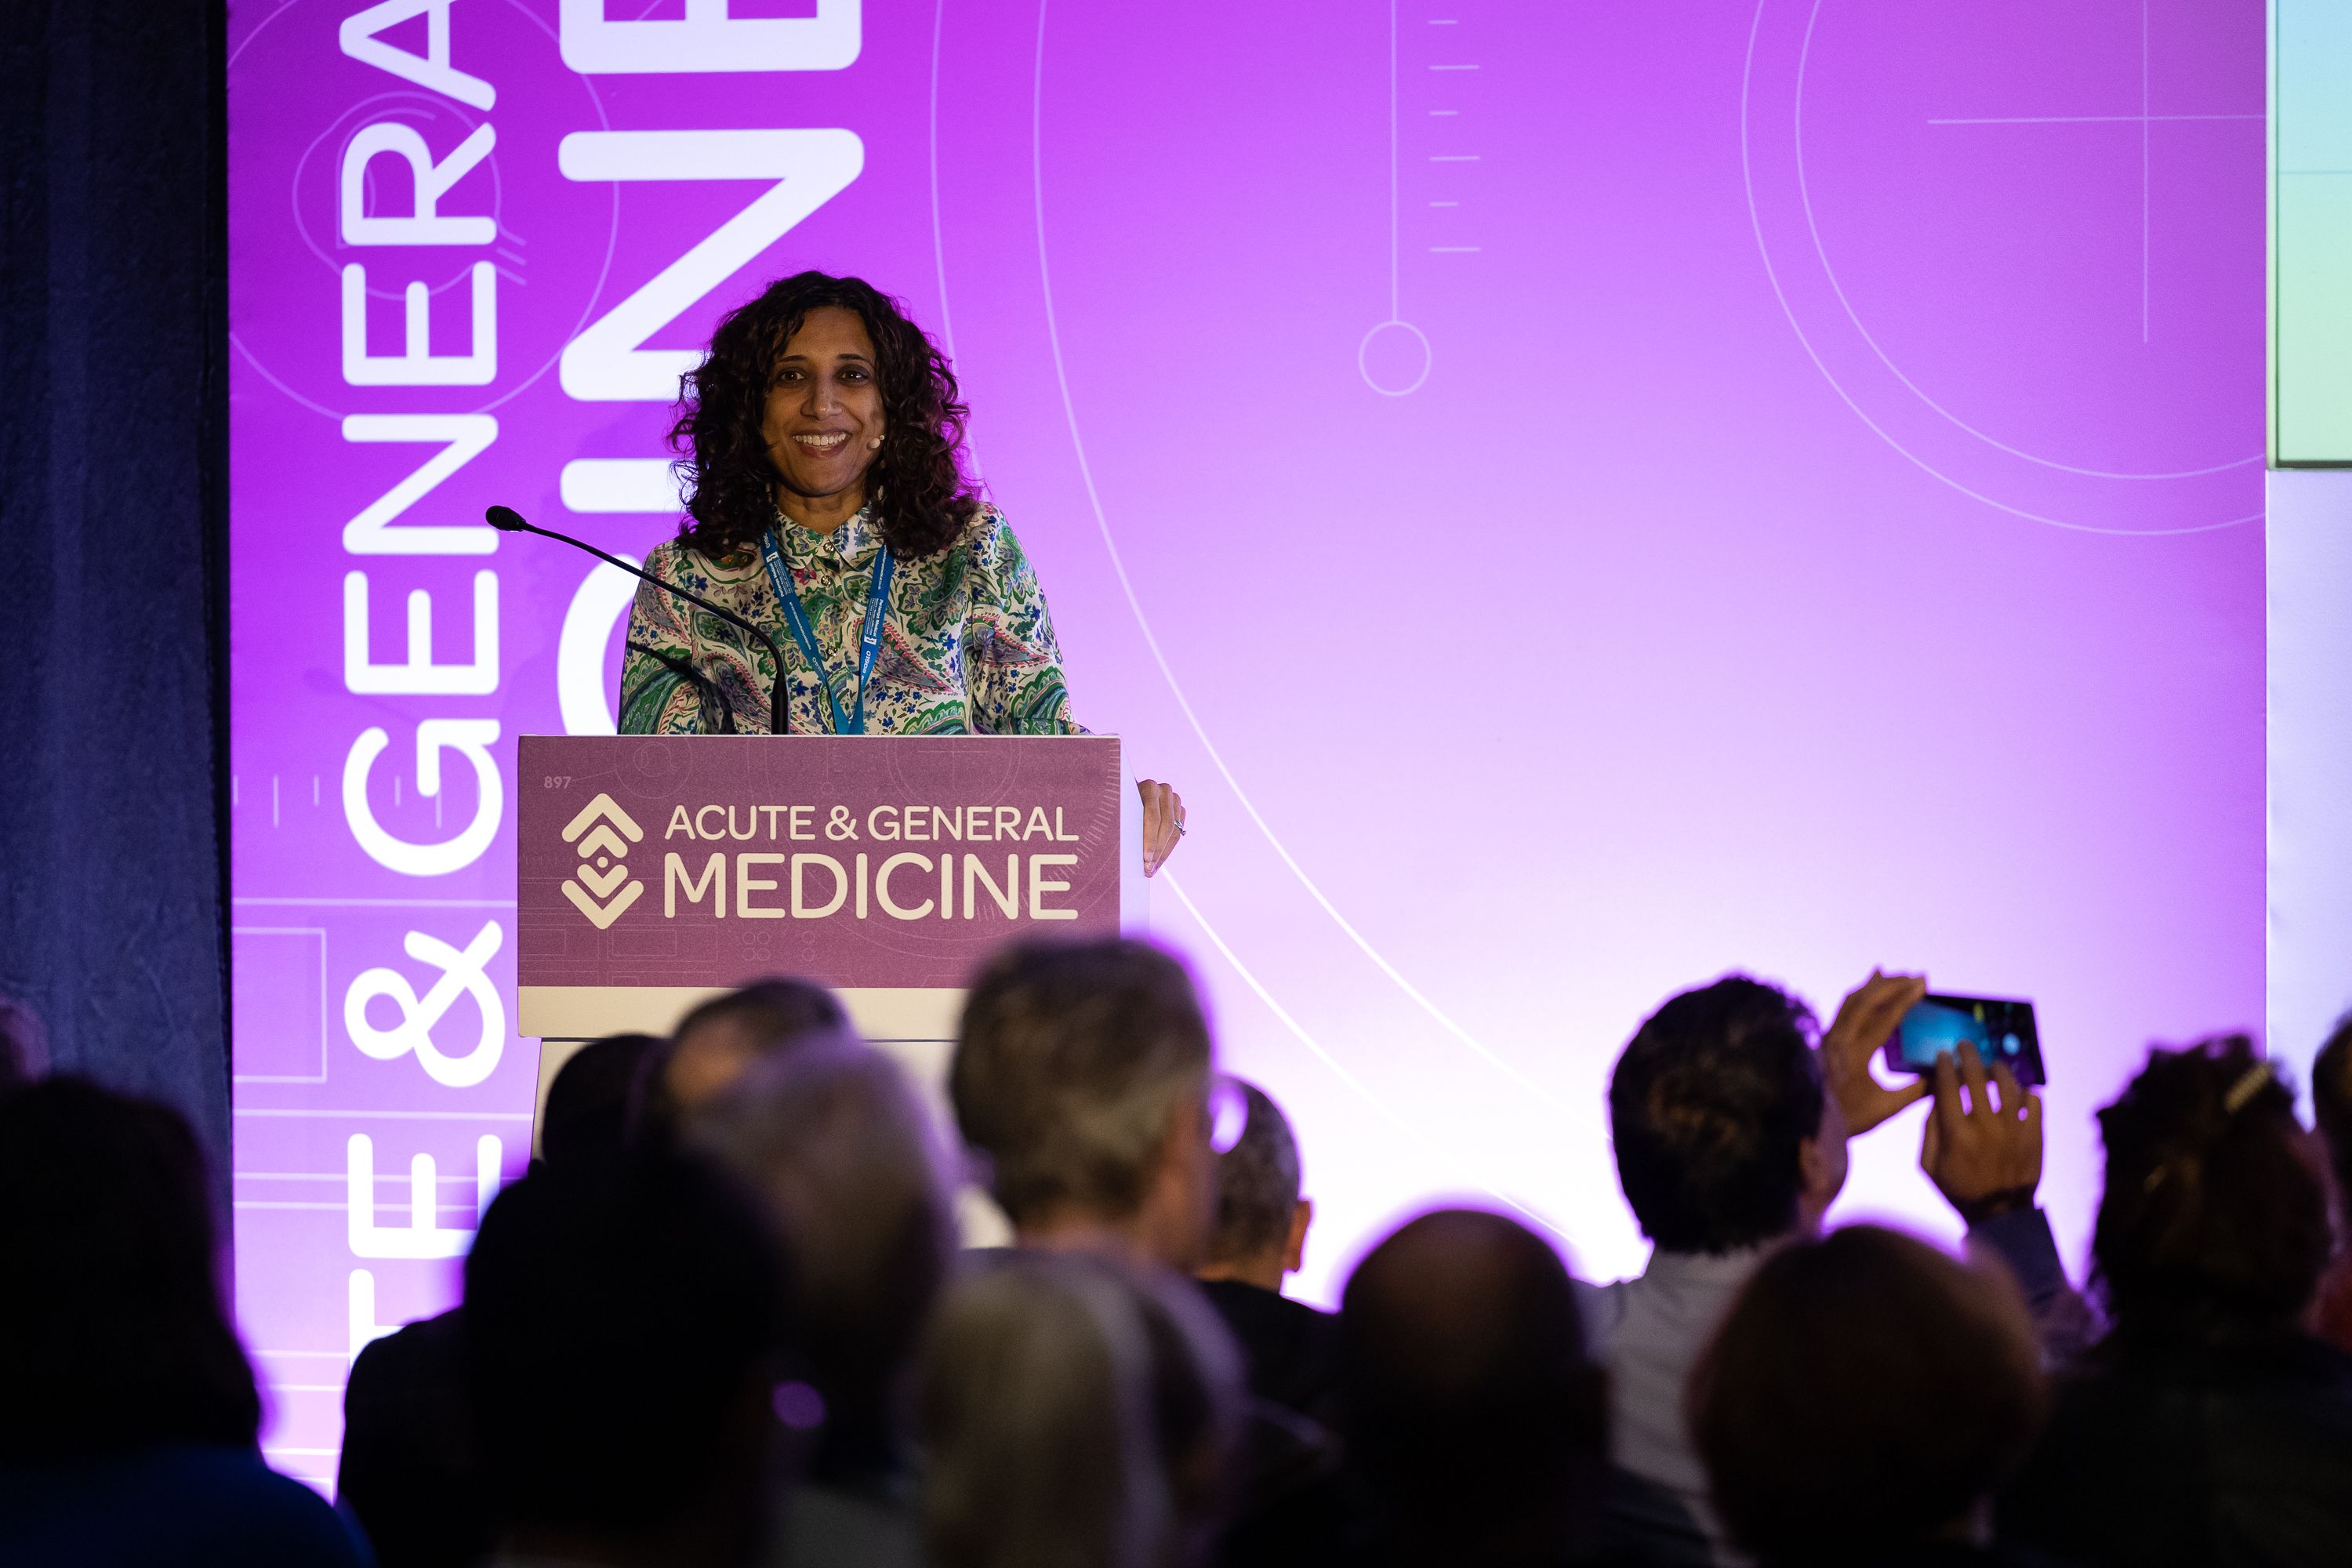 Acute & General Medicine Conference 2022 reunites healthcare